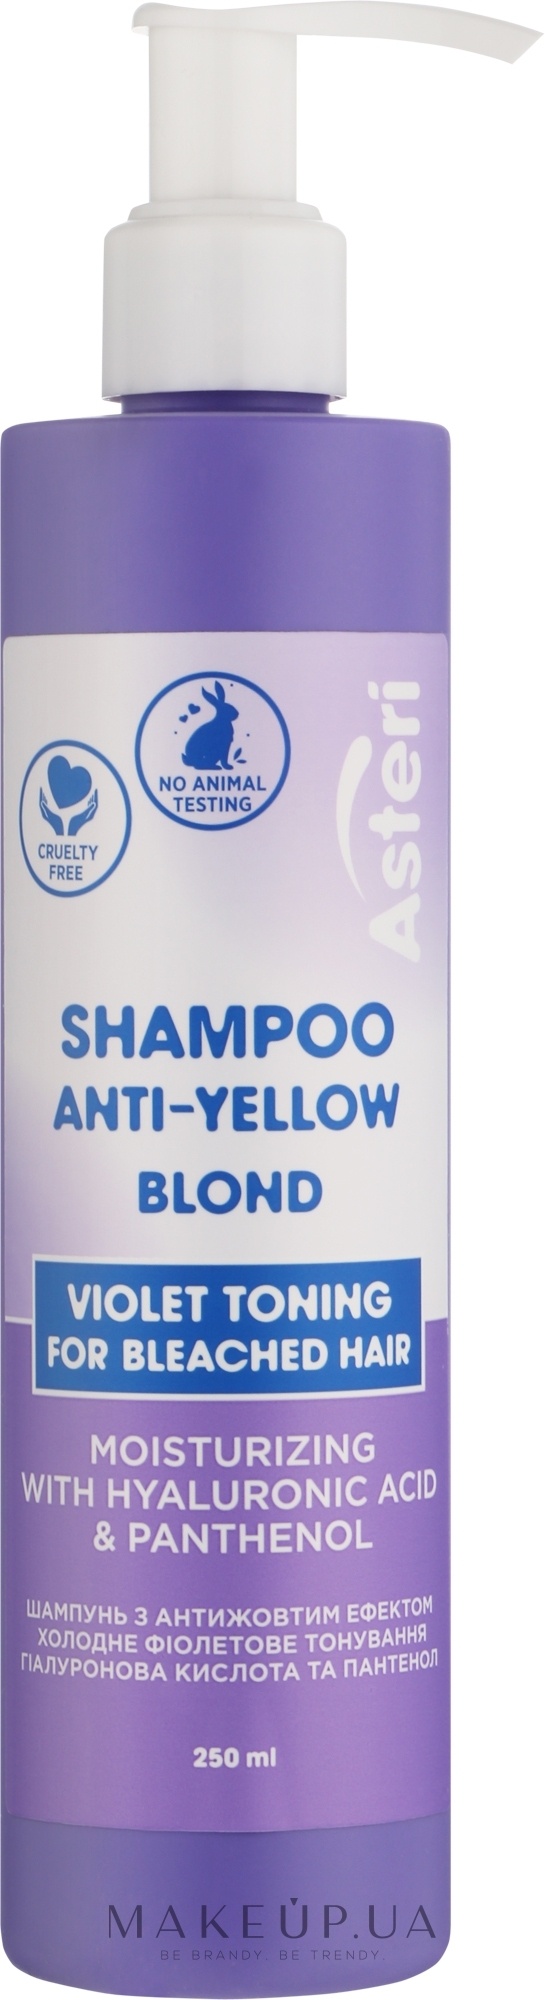 Шампунь с антижелтым эффектом для осветленных волос - Asteri Anti-Yellow Blond Shampoo — фото 250ml